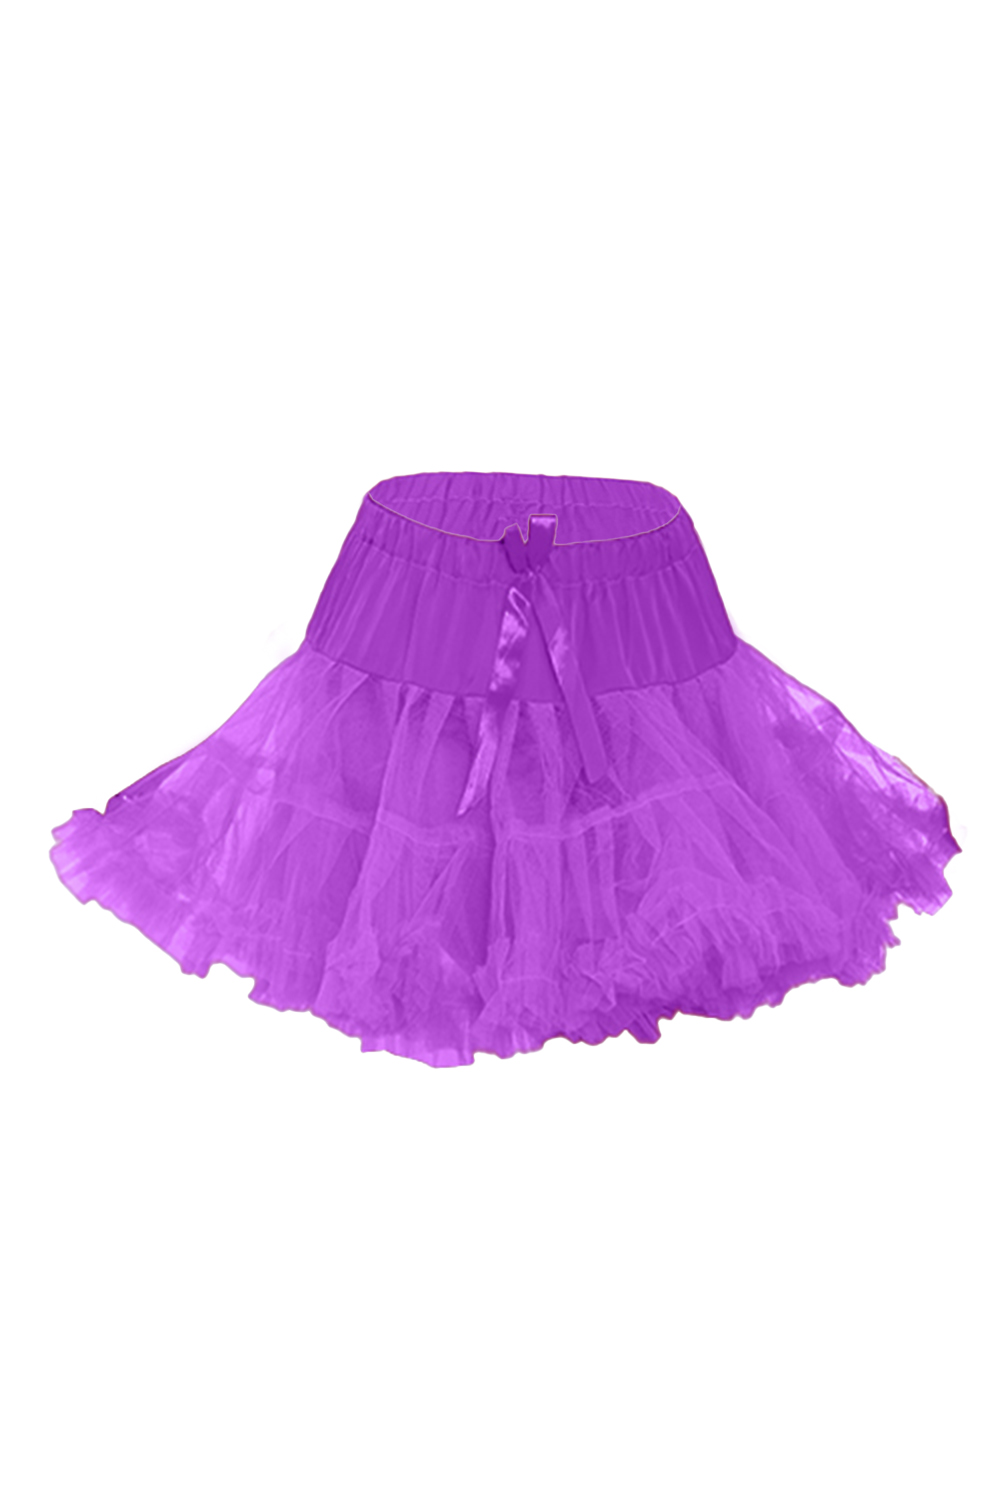 Crazy Chick Girls Purple Layered Ruffle Petticoat Tutu Skirt